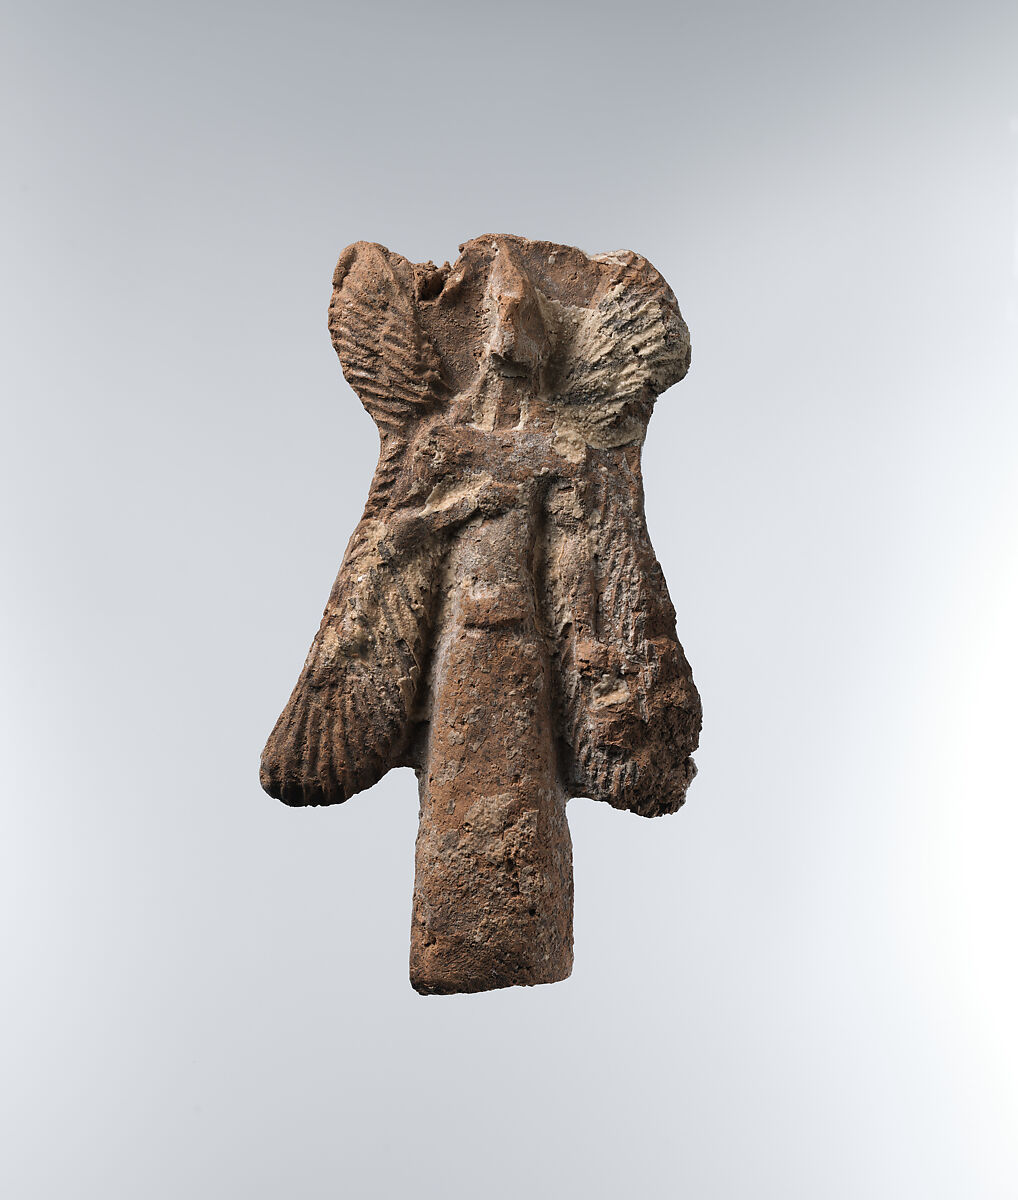 Apkallu figure: bird-headed, winged figure carrying a bucket